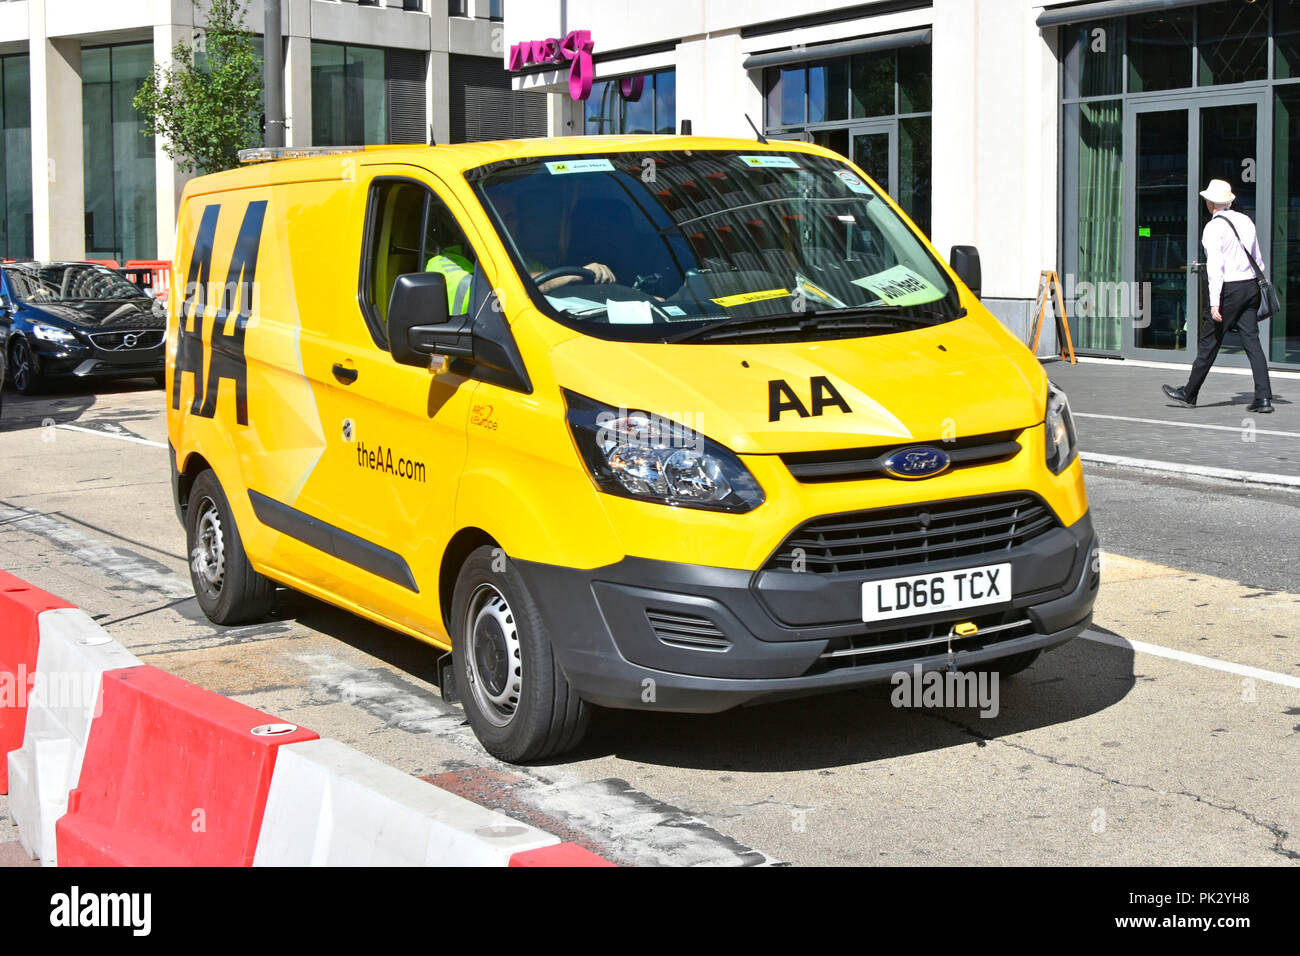 Ford Transit van & driver avec logo jaune AA sur ventilation van conduite le long de la route dans le centre-ville de Stratford Newham œuvres East London England UK Banque D'Images